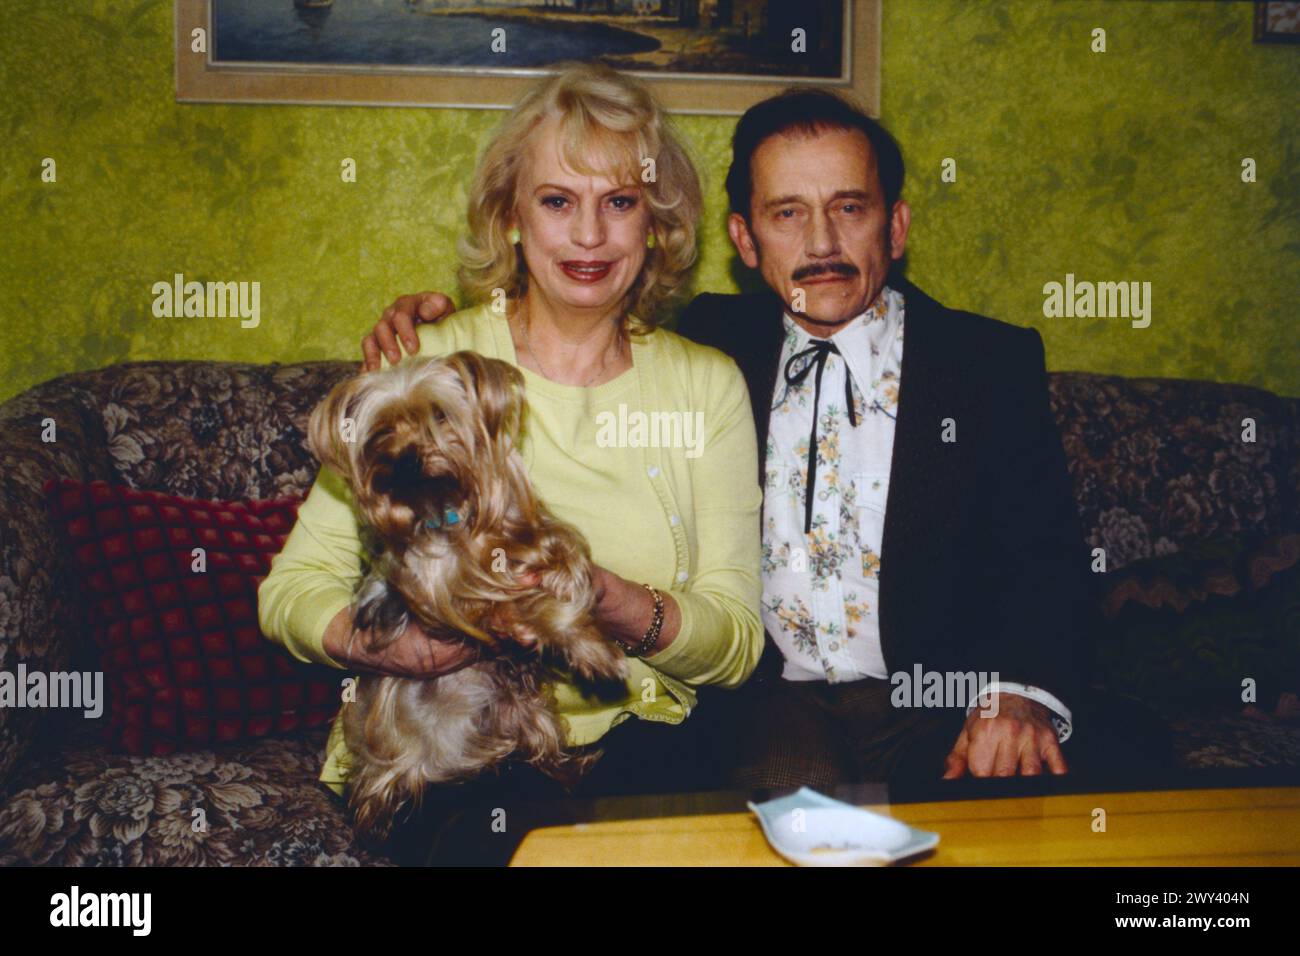 Die Hunde sind schuld, ARD Fernsehfilm von 2000, Regie: Andreas Prochaska, Bild: BARBARA VALENTIN mit Yorkshire Terrier als Marlene, welche eine Schwäche für Hunde hat und TILO PRÜCKNER als Imbissbesitzer Engelbrecht, der kein Freund von Hunden ist. Stockfoto